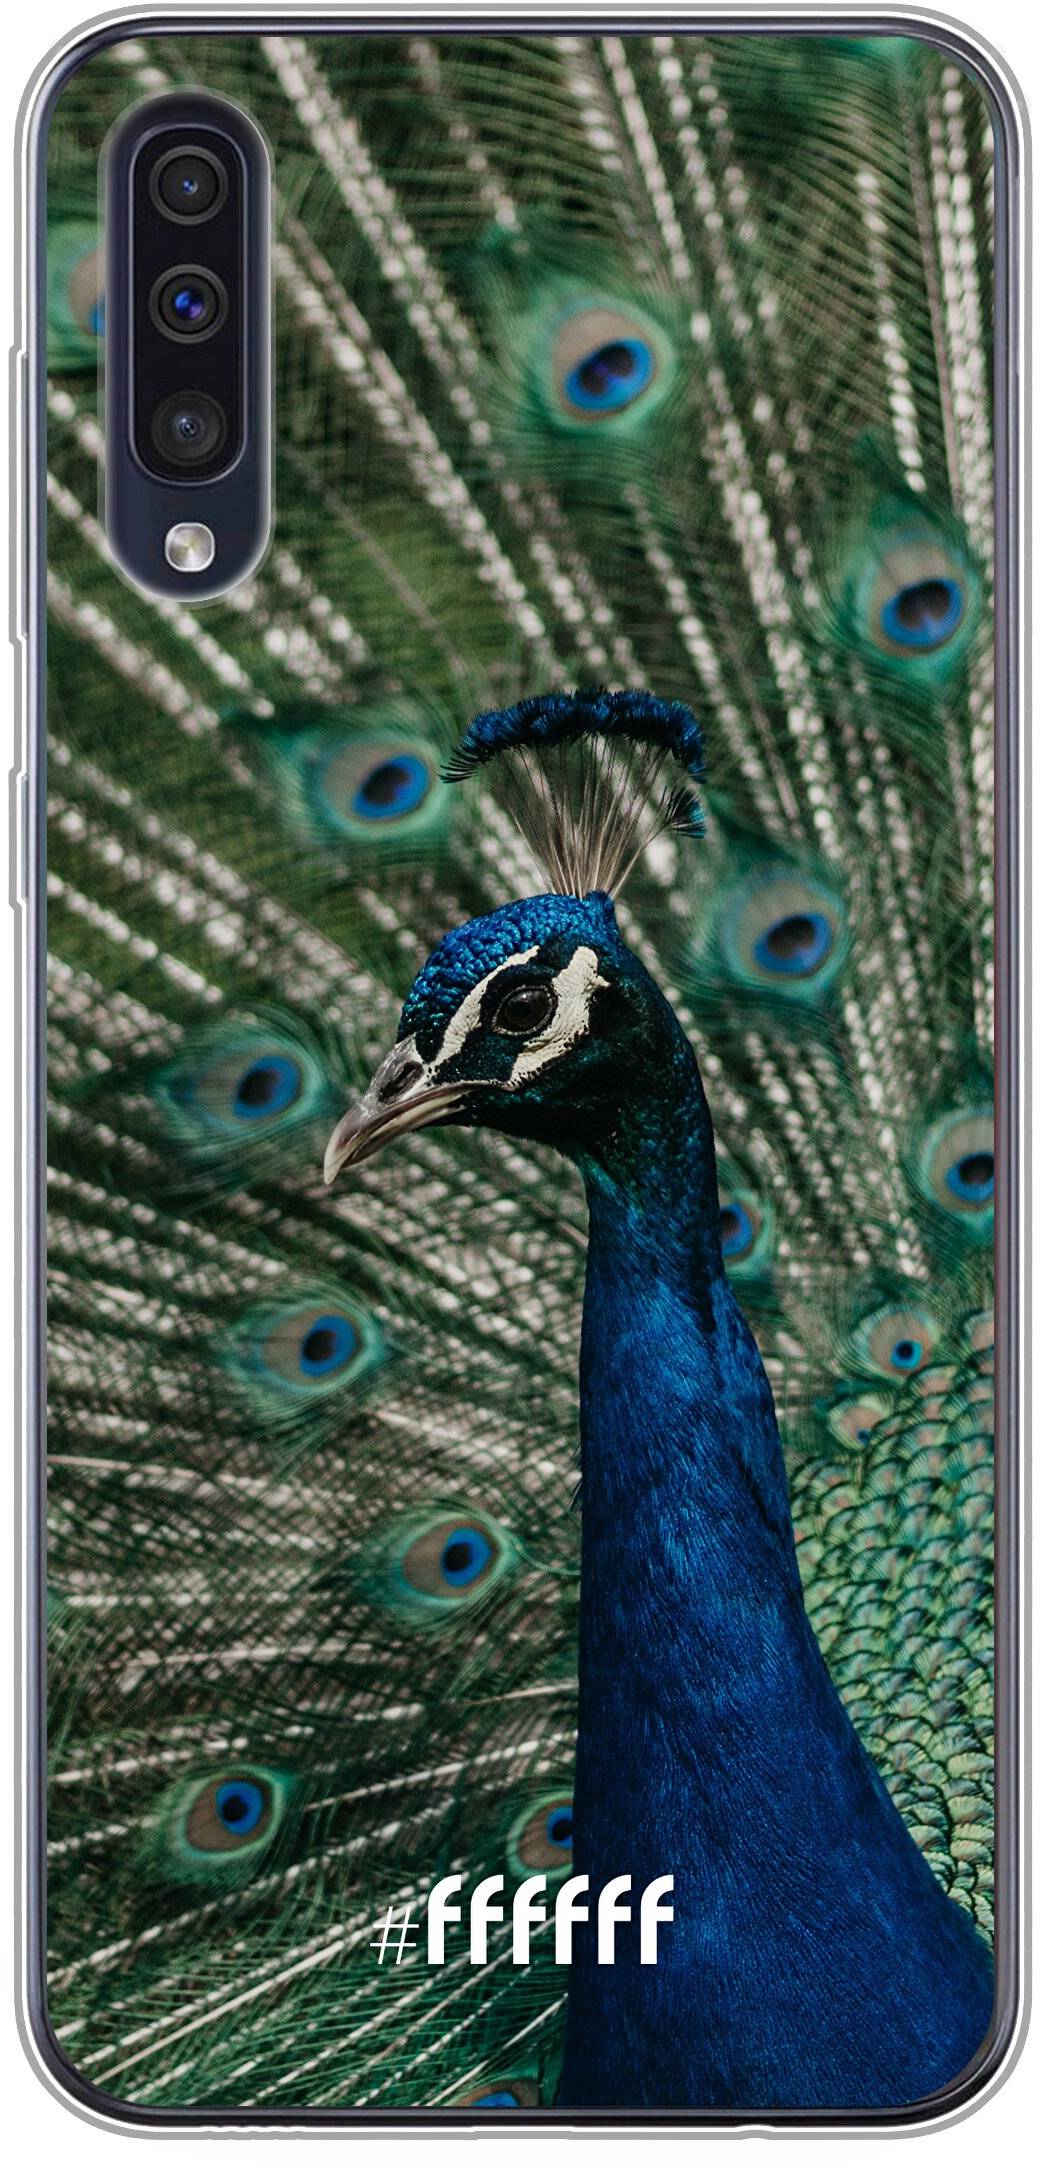 Peacock Galaxy A50s